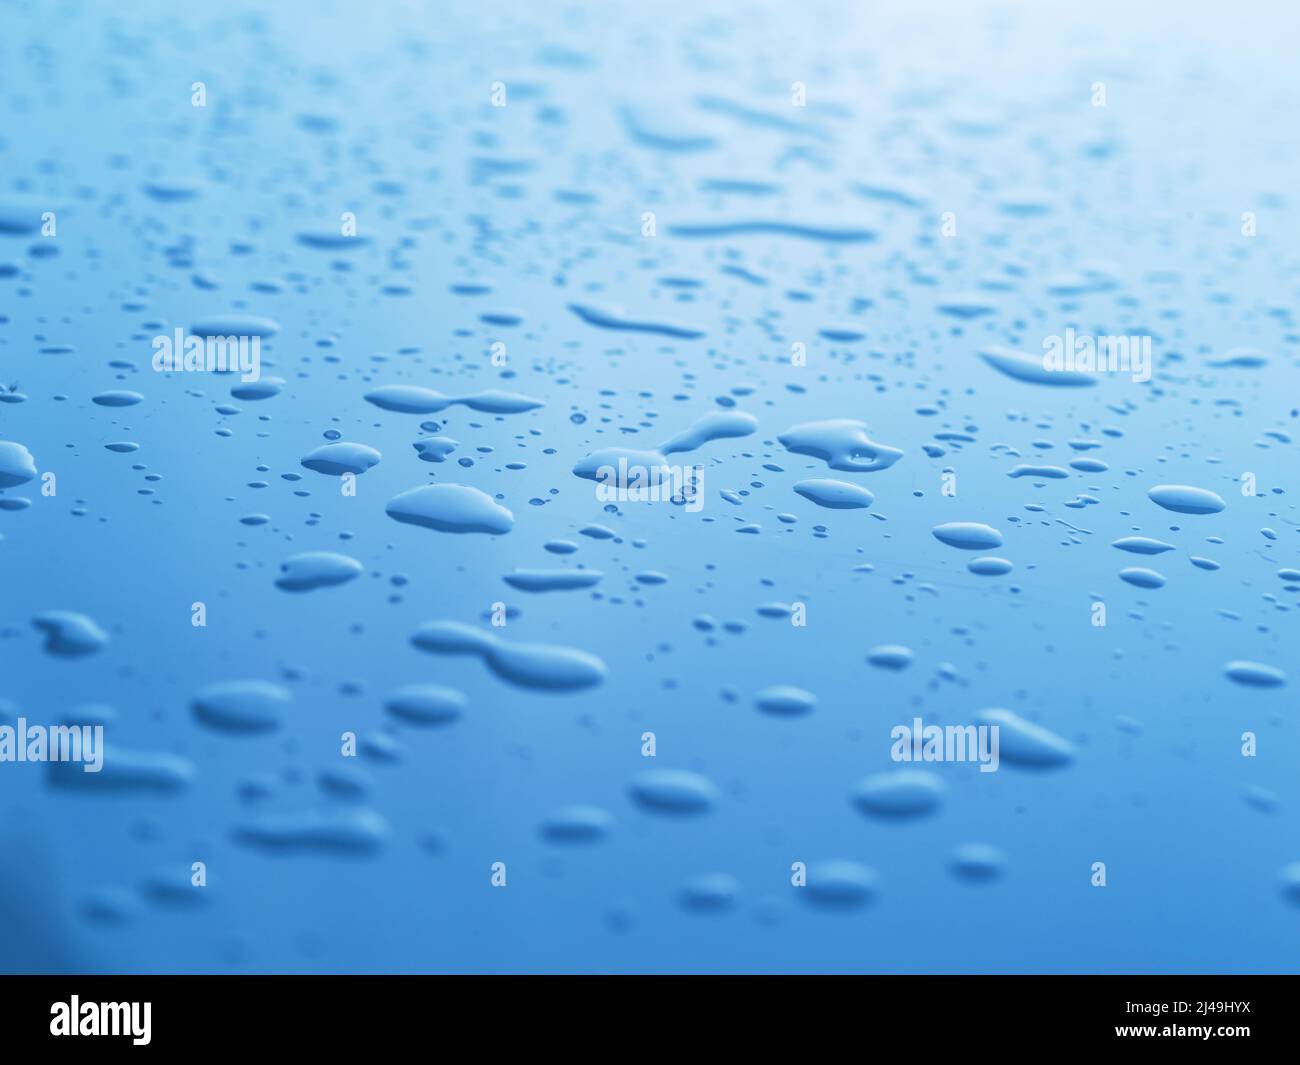 Es gibt überall Spuren von Wasser. Abstrakte Studioaufnahme von Wassertropfen auf einer blauen Oberfläche. Stockfoto